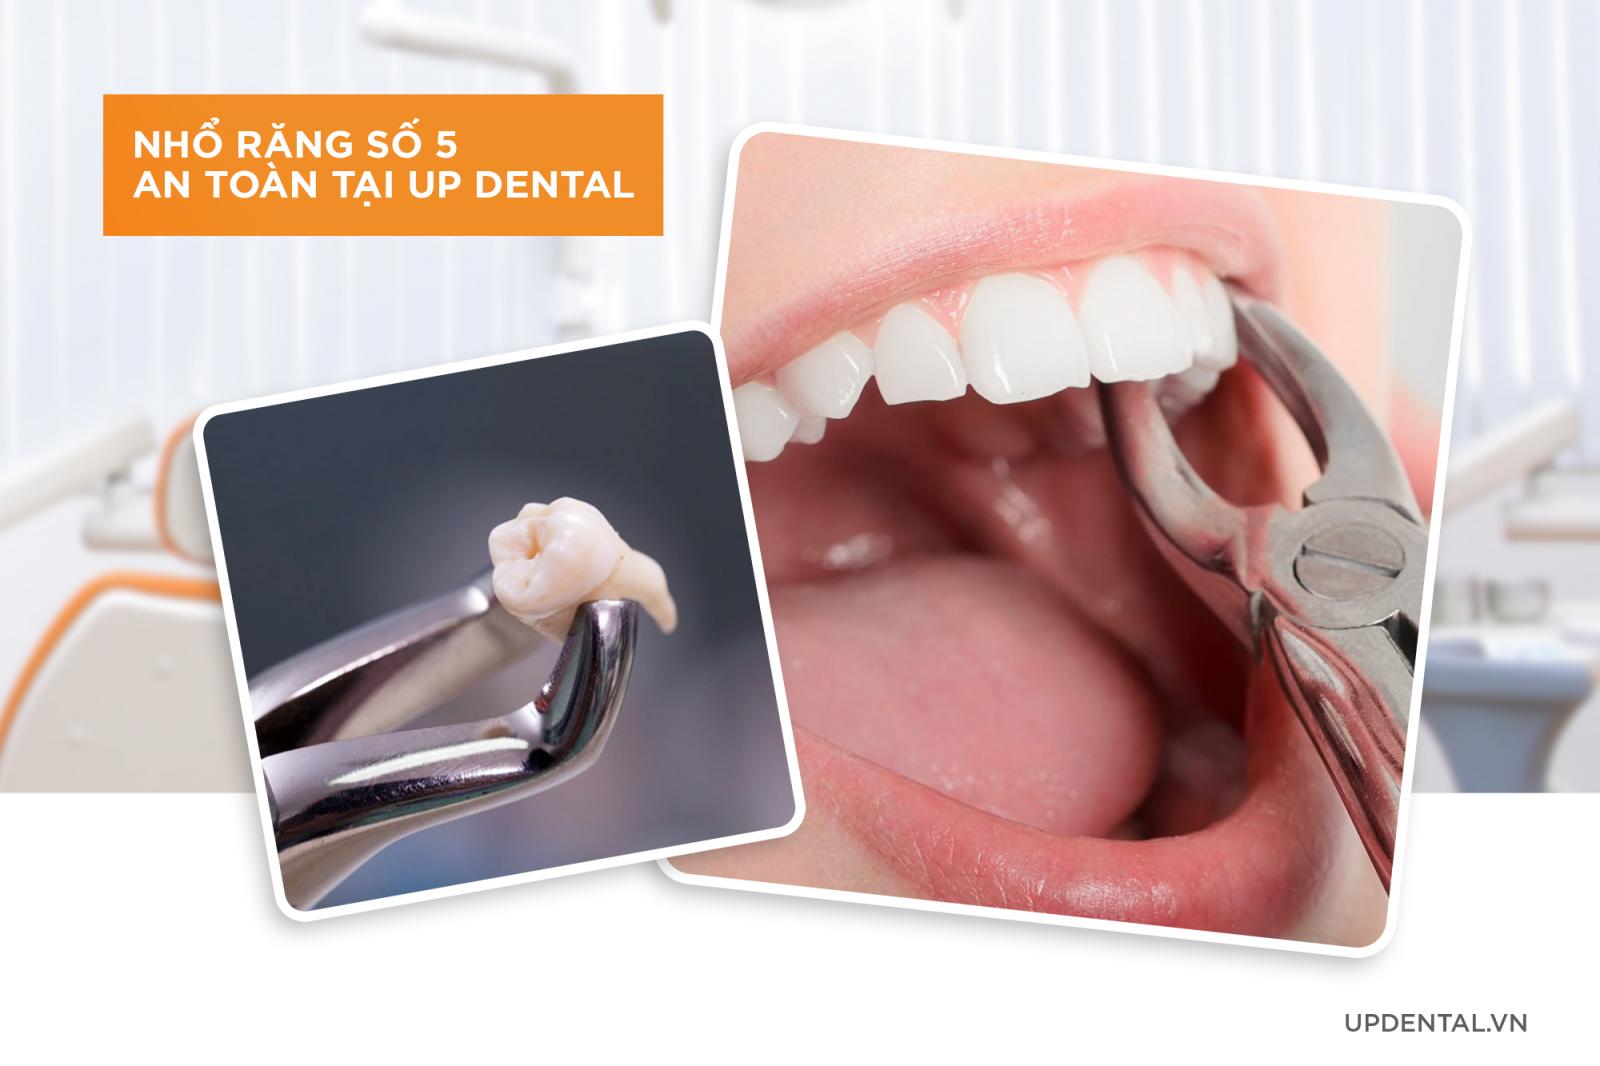 Nhổ răng số 5 khi niềng răng an toàn tại Up Dental